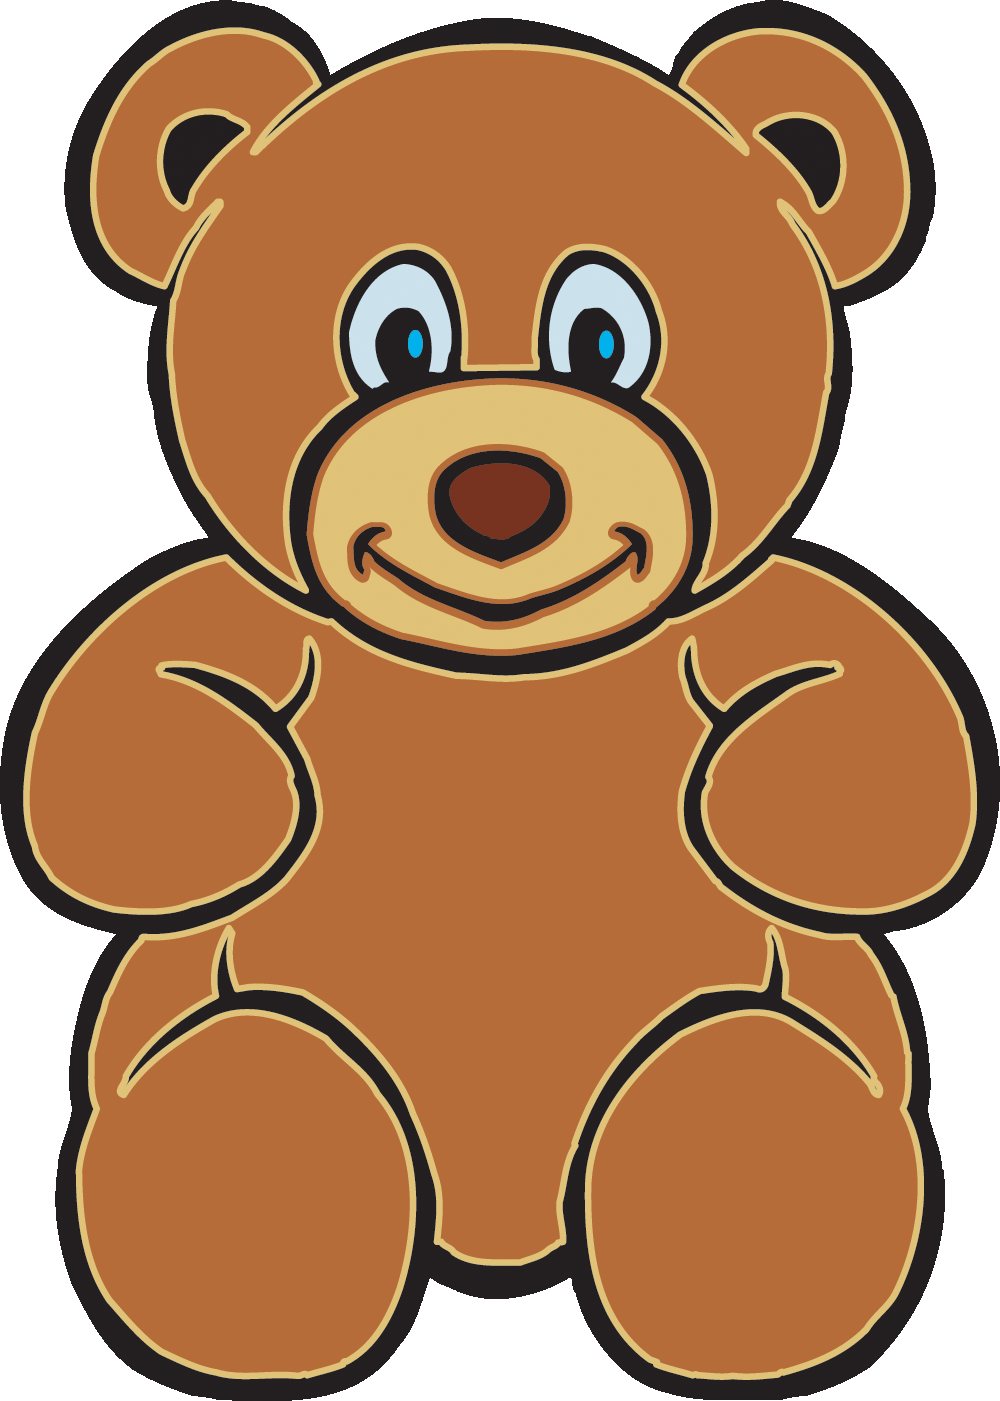 Clip art of teddy bear